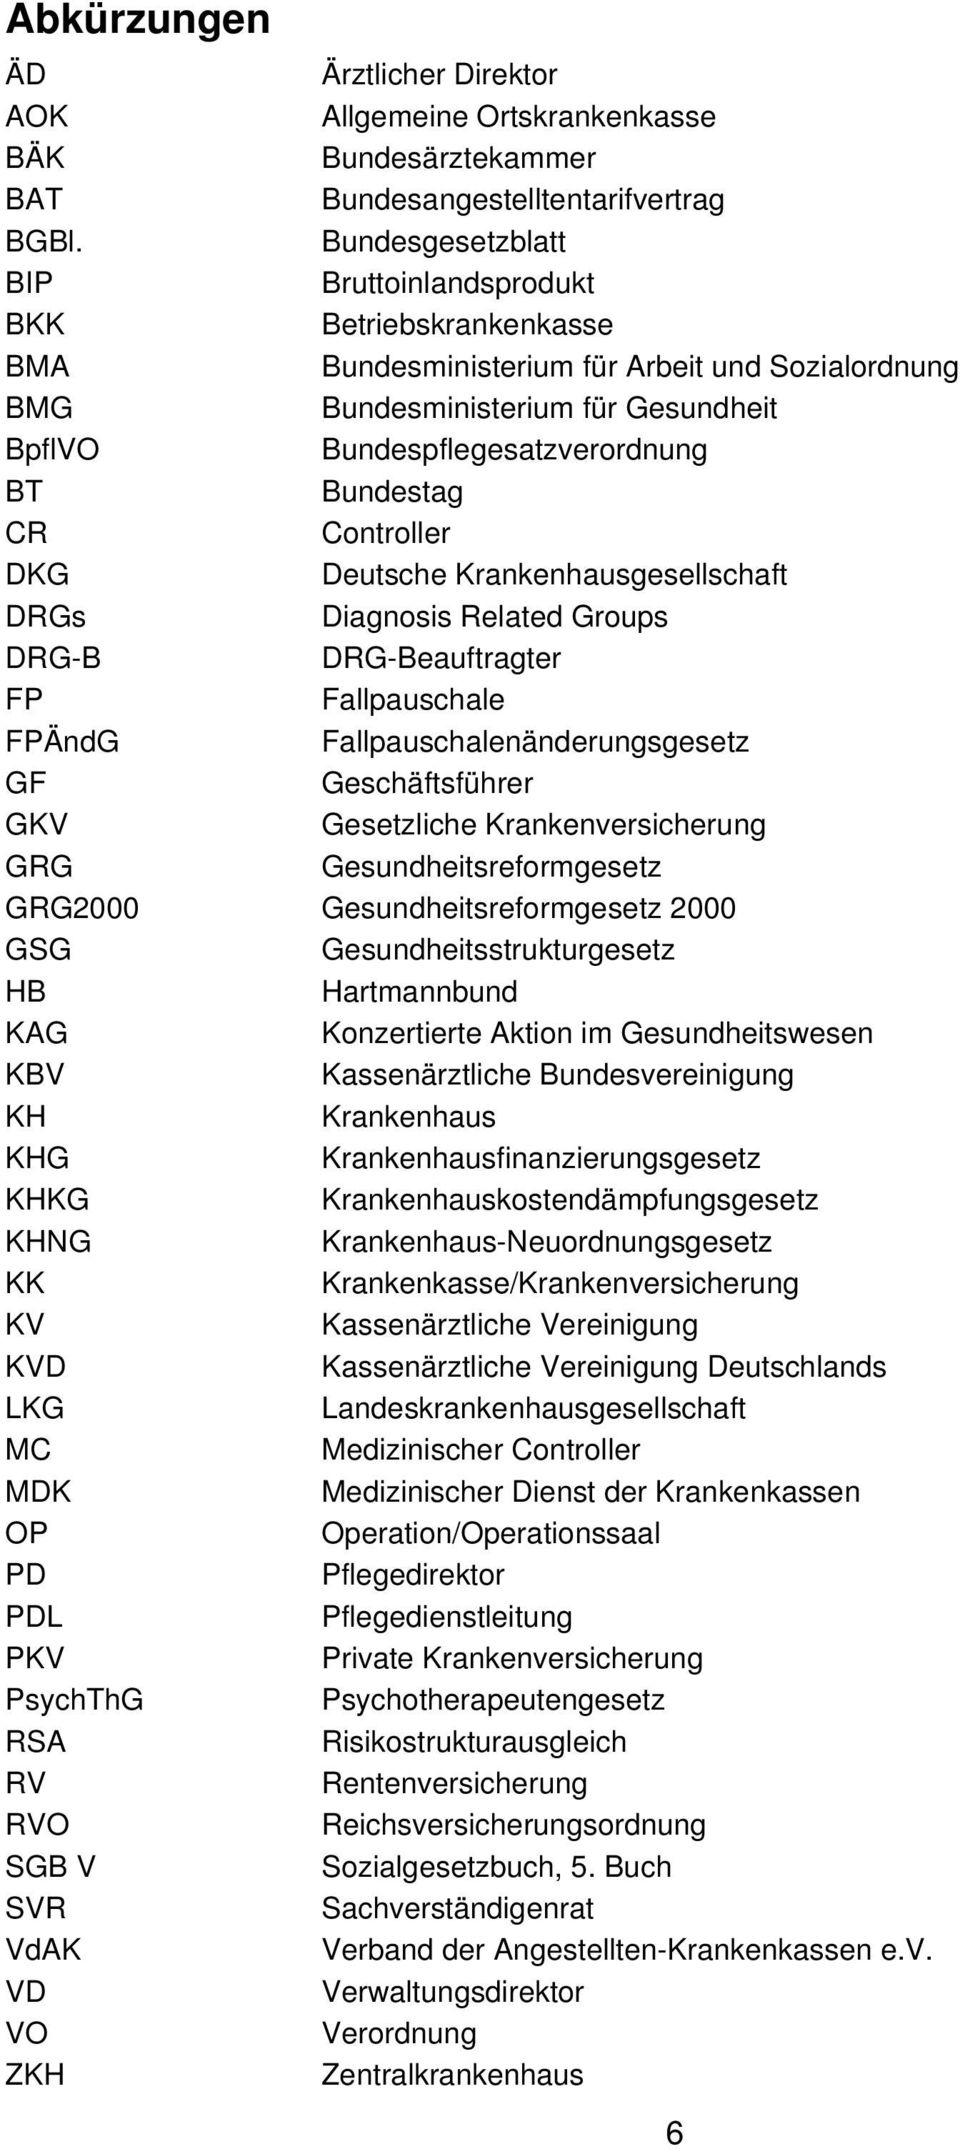 Bundestag CR Controller DKG Deutsche Krankenhausgesellschaft DRGs Diagnosis Related Groups DRG-B DRG-Beauftragter FP Fallpauschale FPÄndG Fallpauschalenänderungsgesetz GF Geschäftsführer GKV